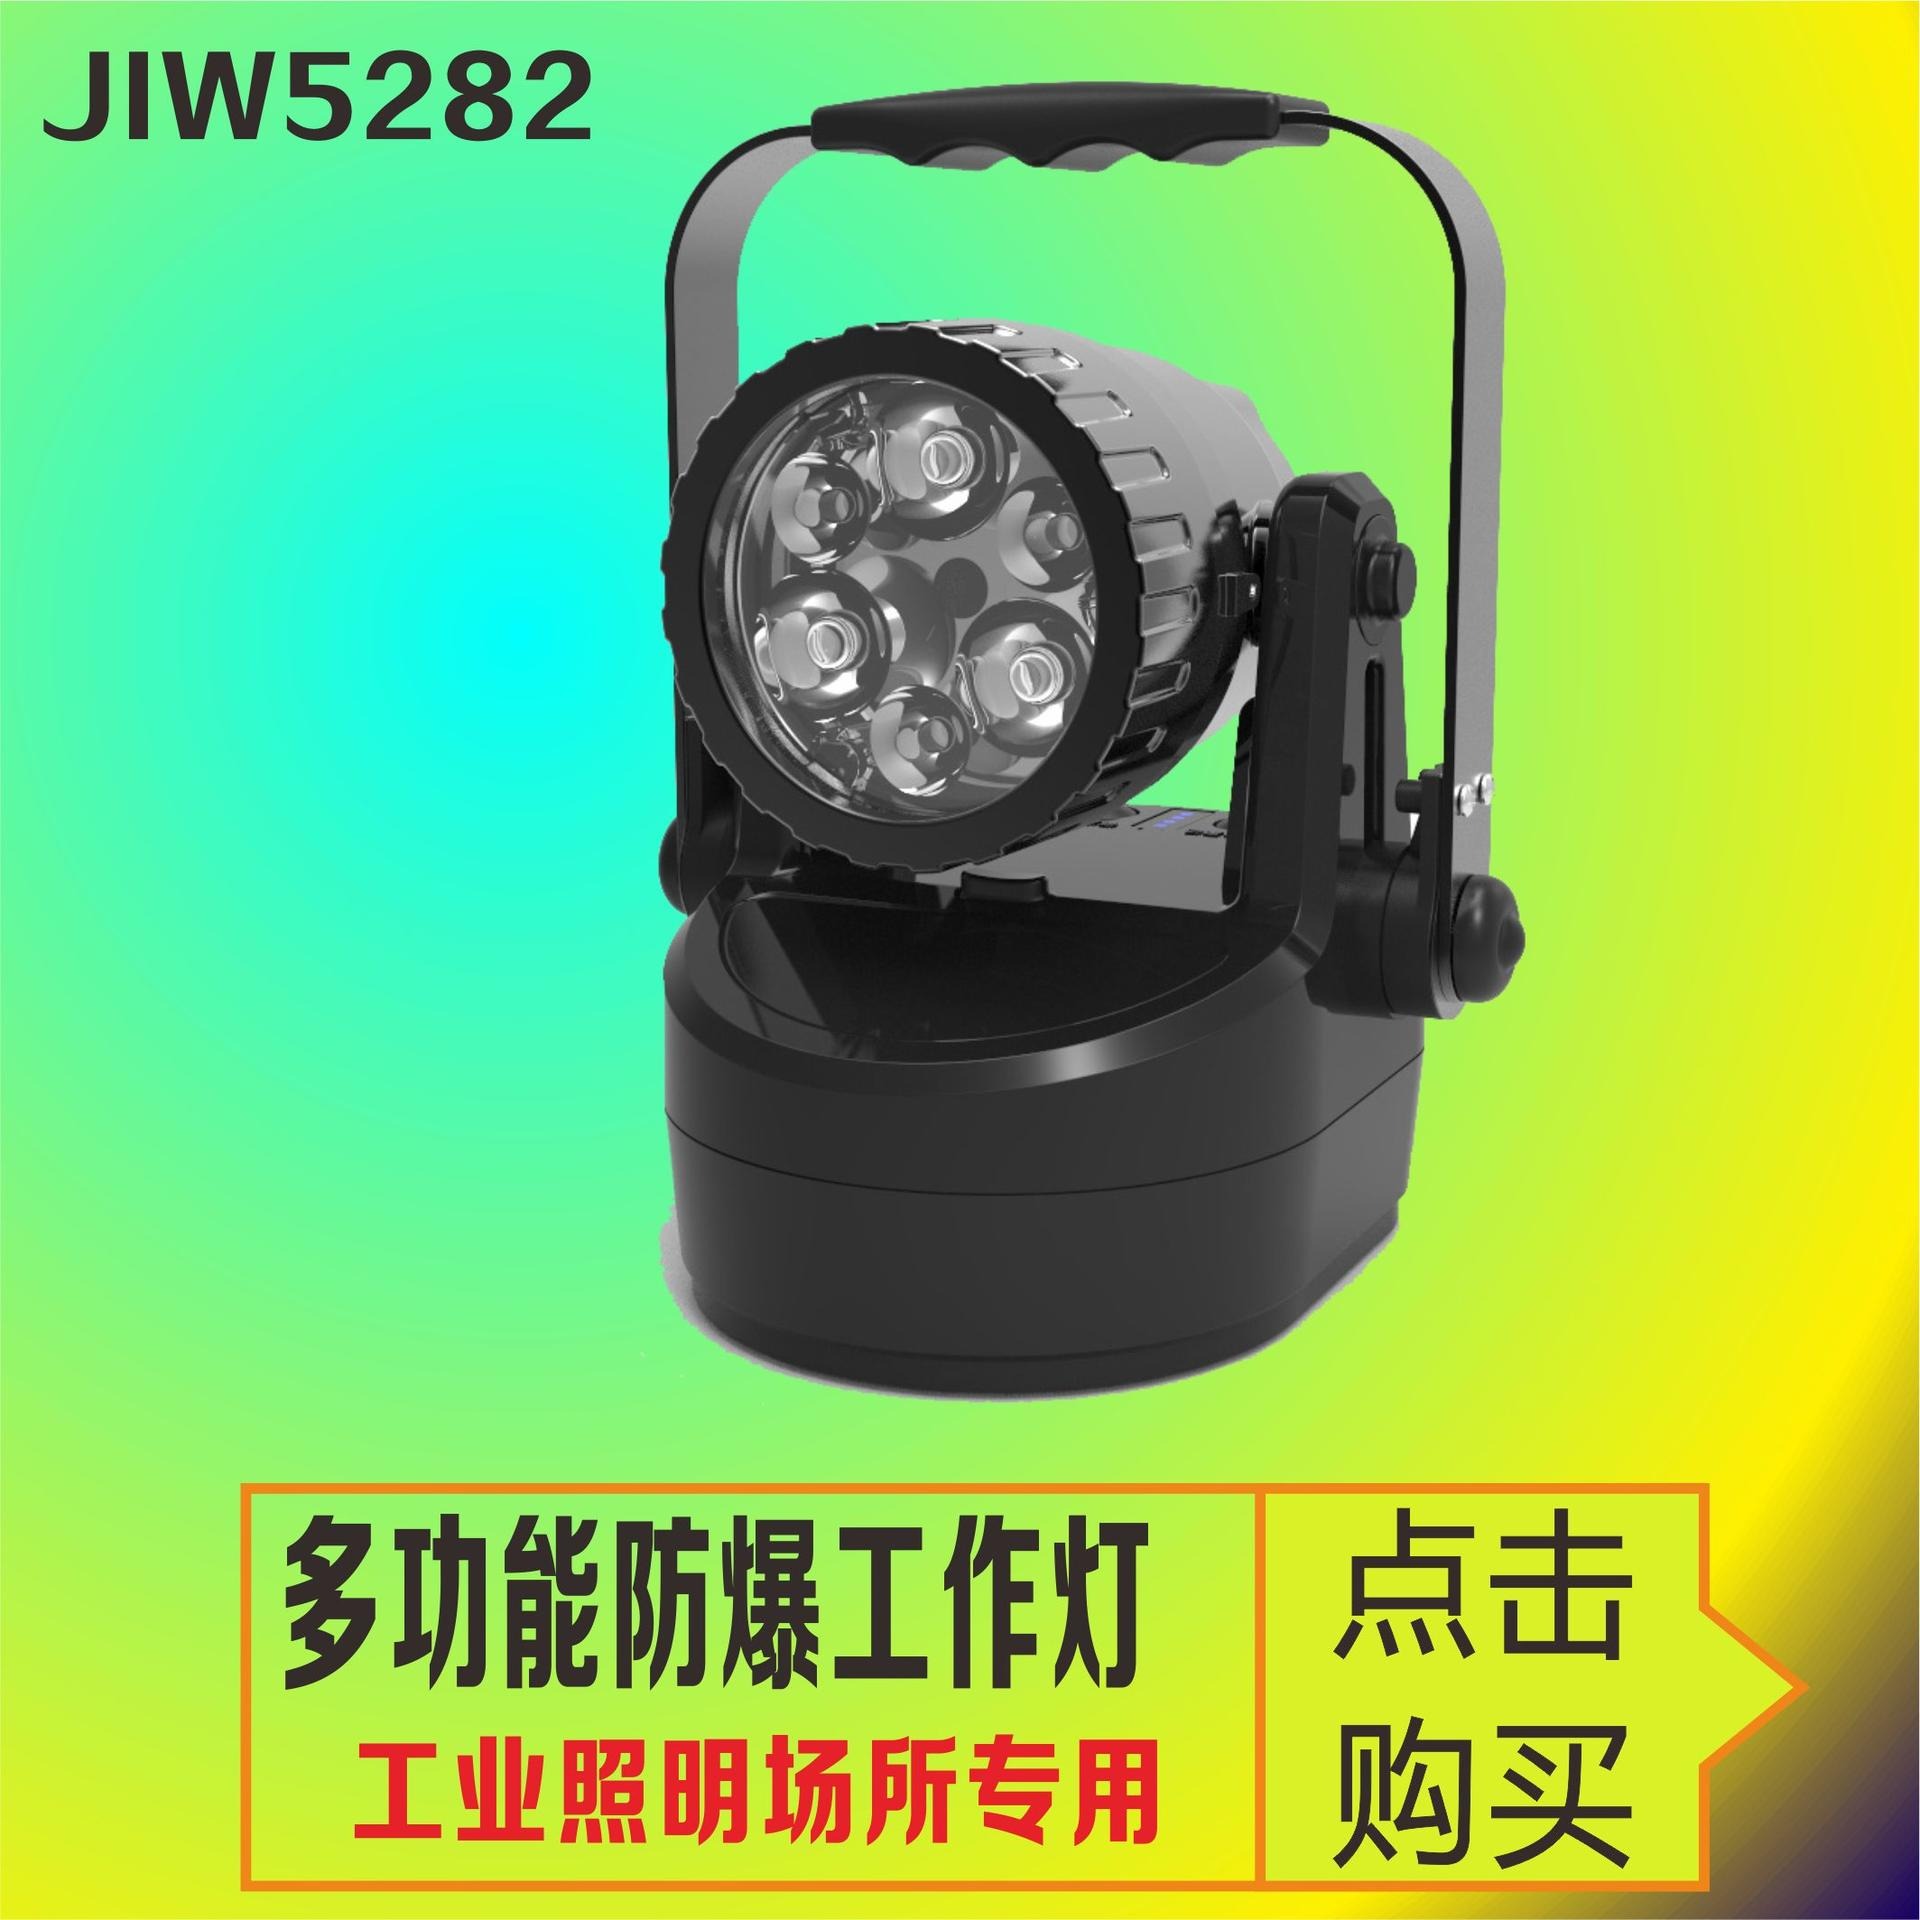 洲创电气巡检聚泛光可调信号灯 JIW5282多功能强光工作灯 大功率LED手提式防爆探照灯 巡视检修防爆手电筒